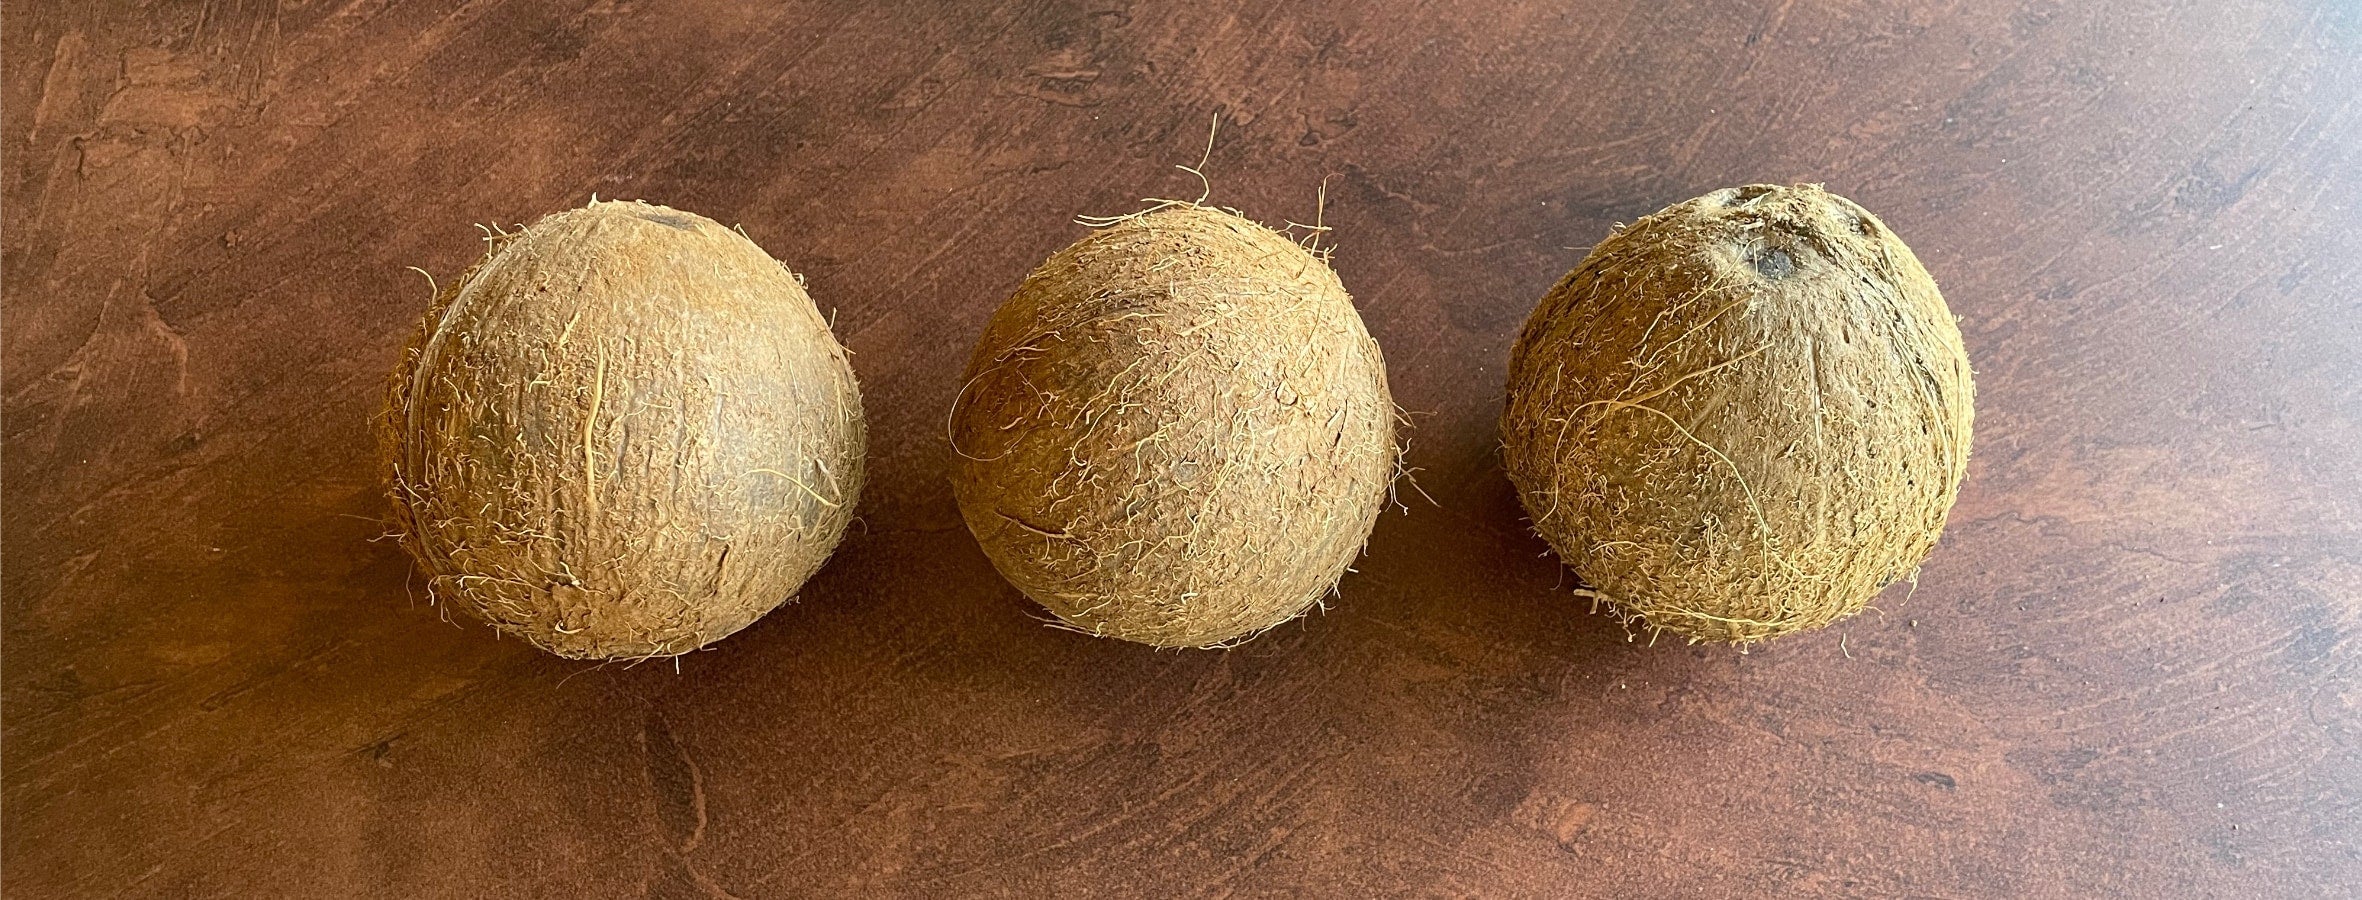 kokosnoten op een rij